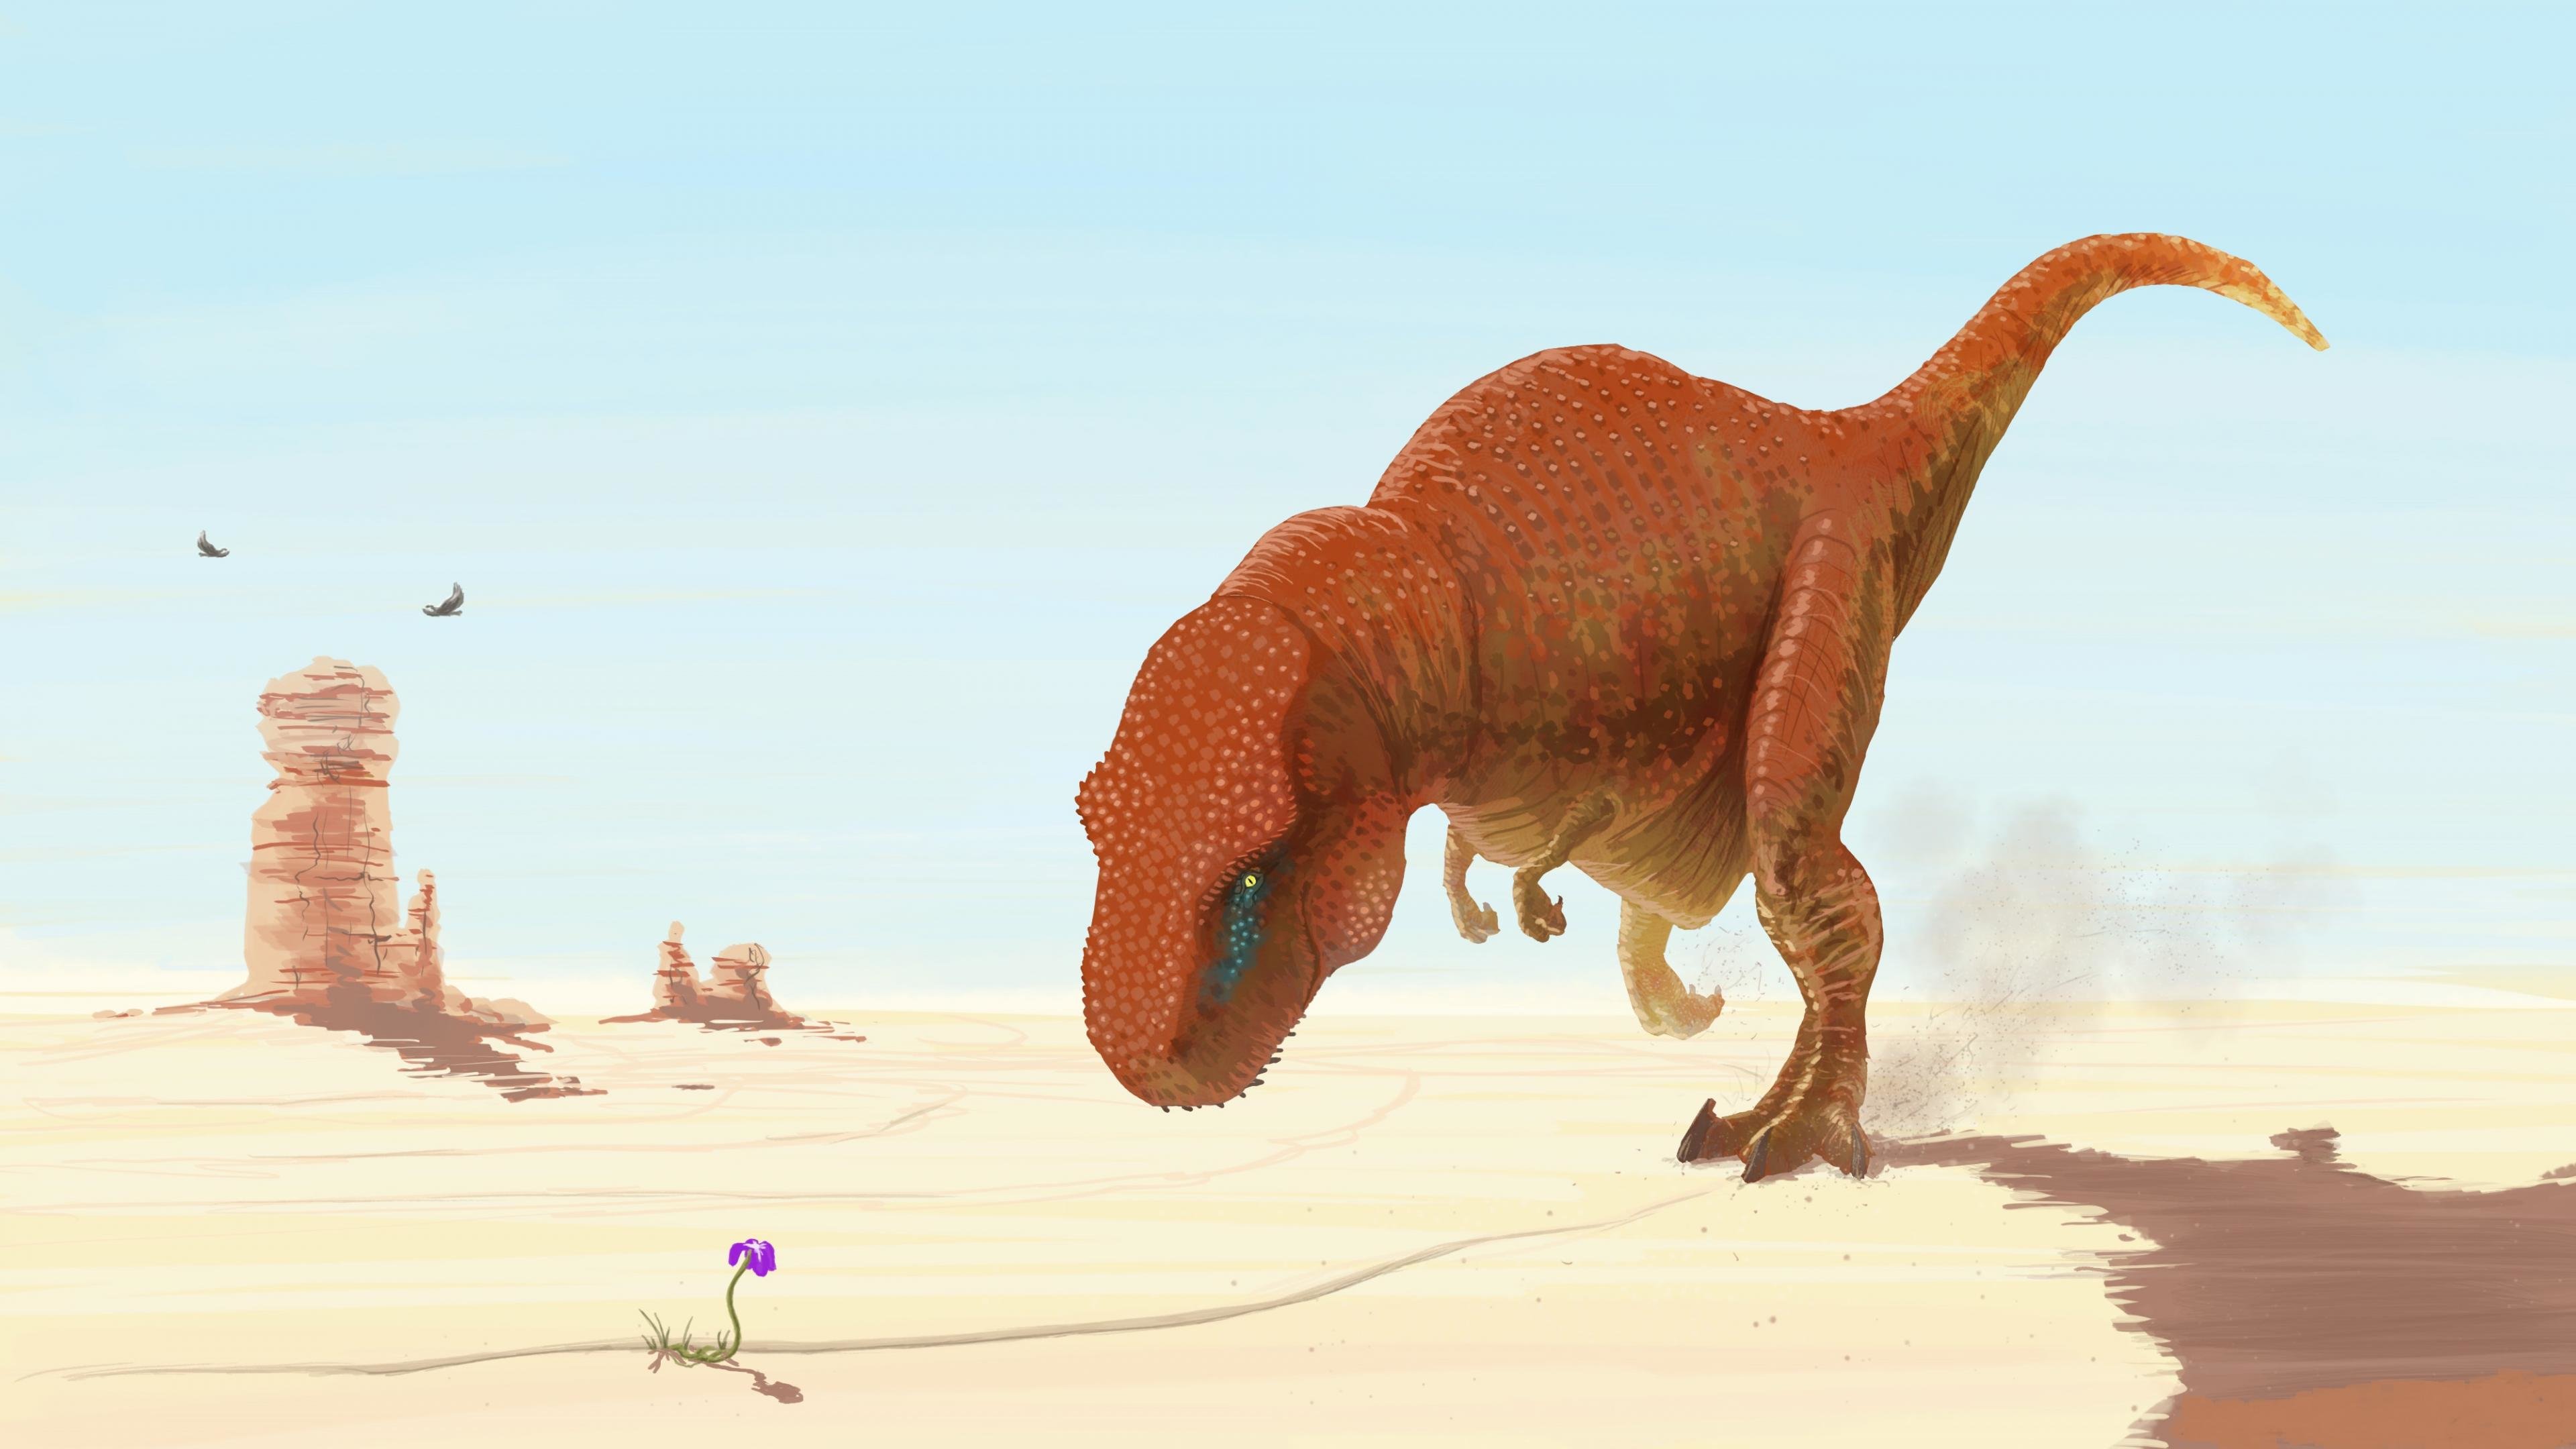 Best Tyrannosaurus Rex wallpaper ID:73911 for High Resolution hd 4k desktop